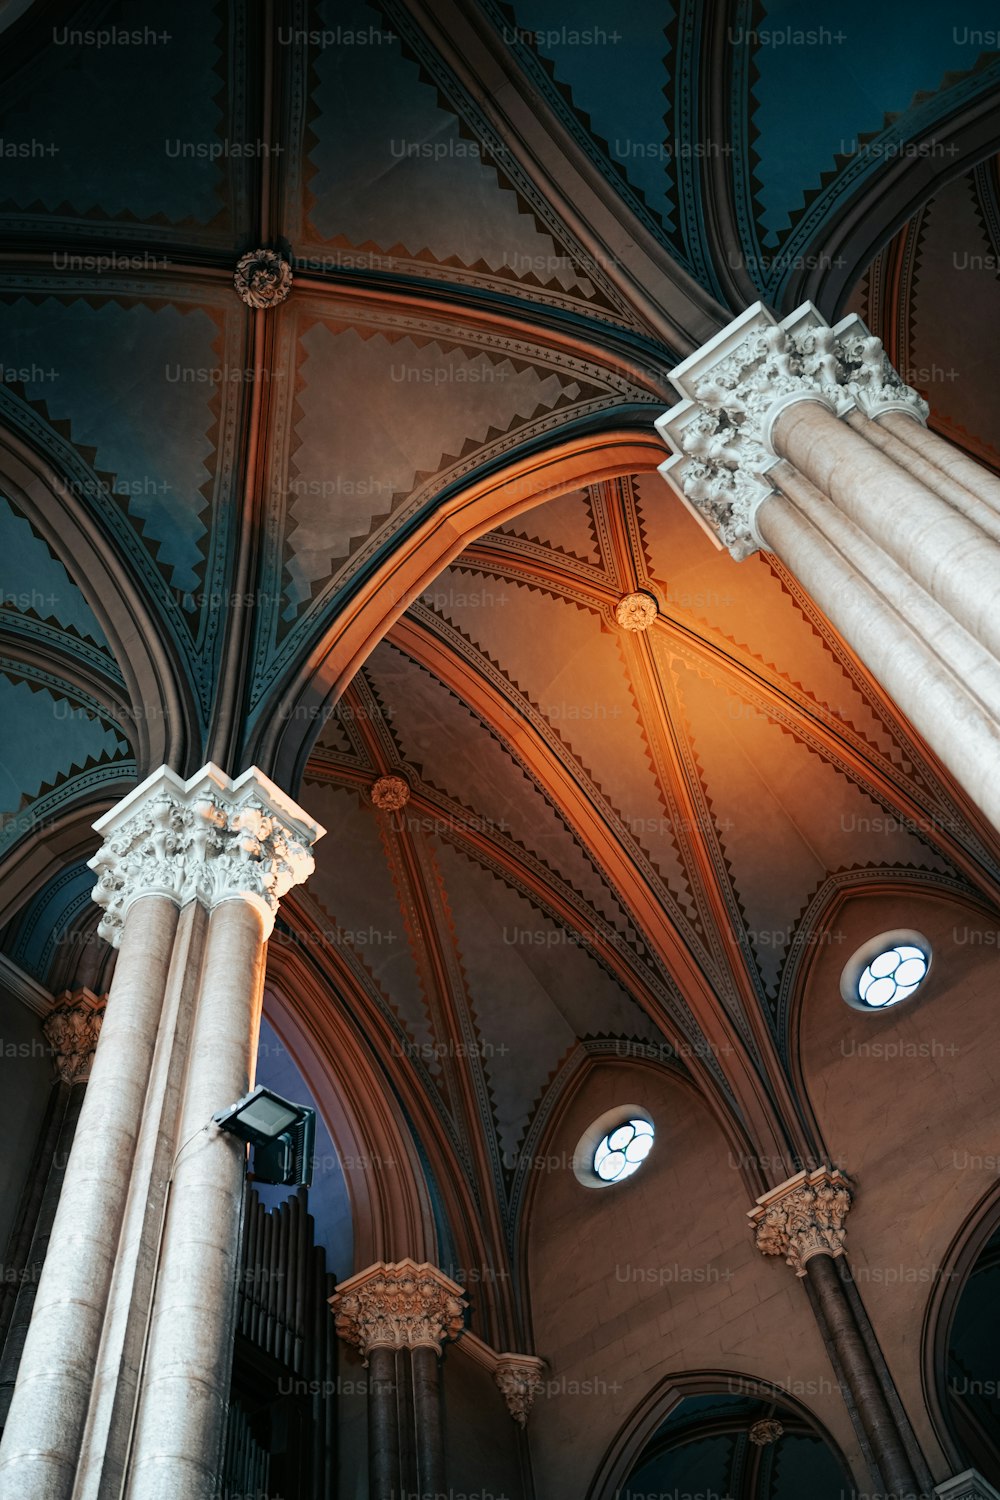 Il soffitto di una grande cattedrale con un orologio su di esso